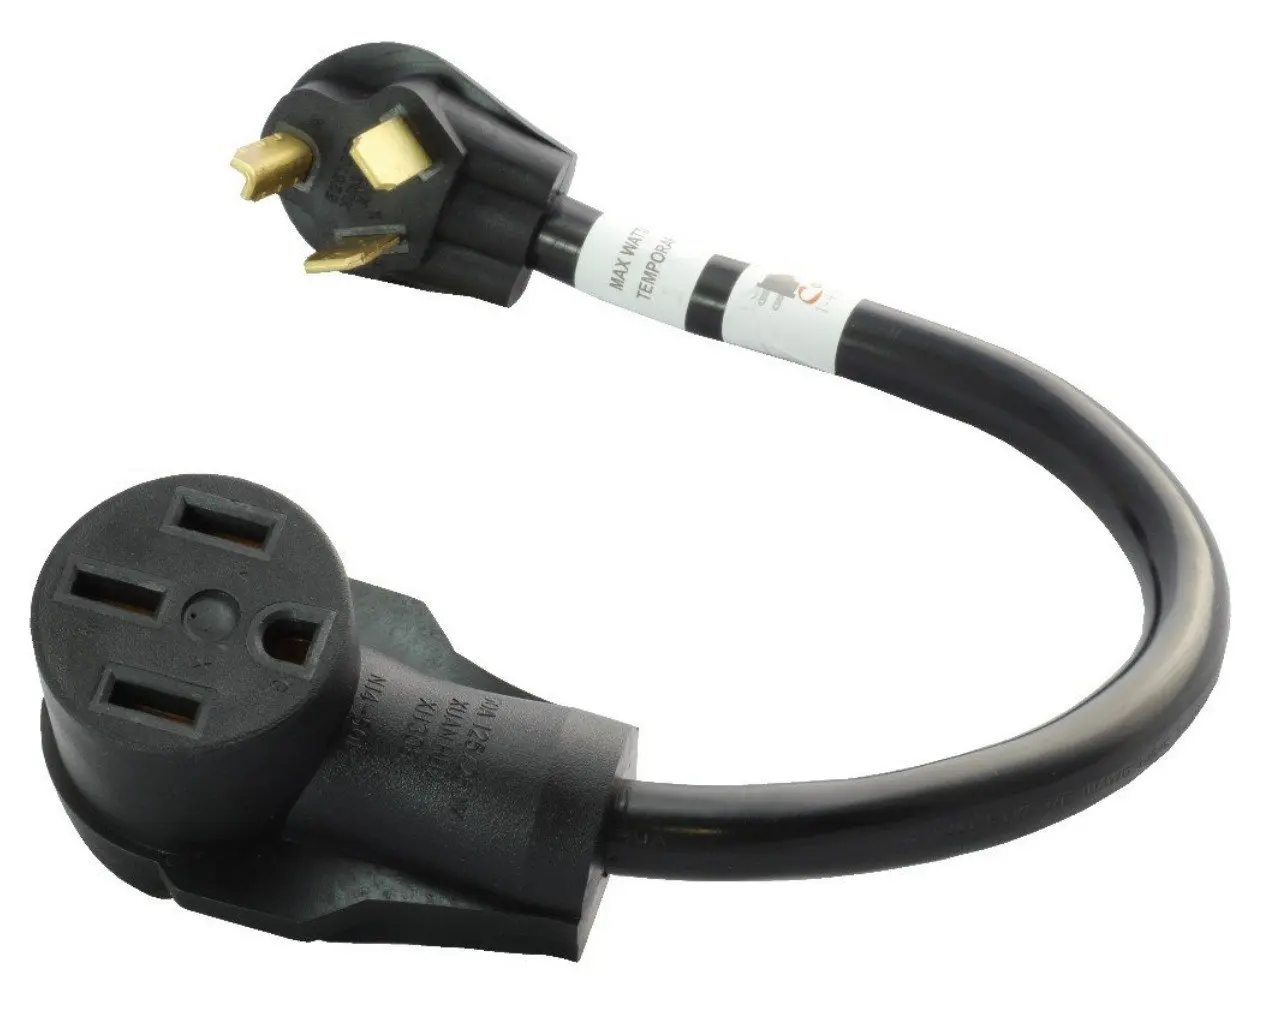 50 amp male plug